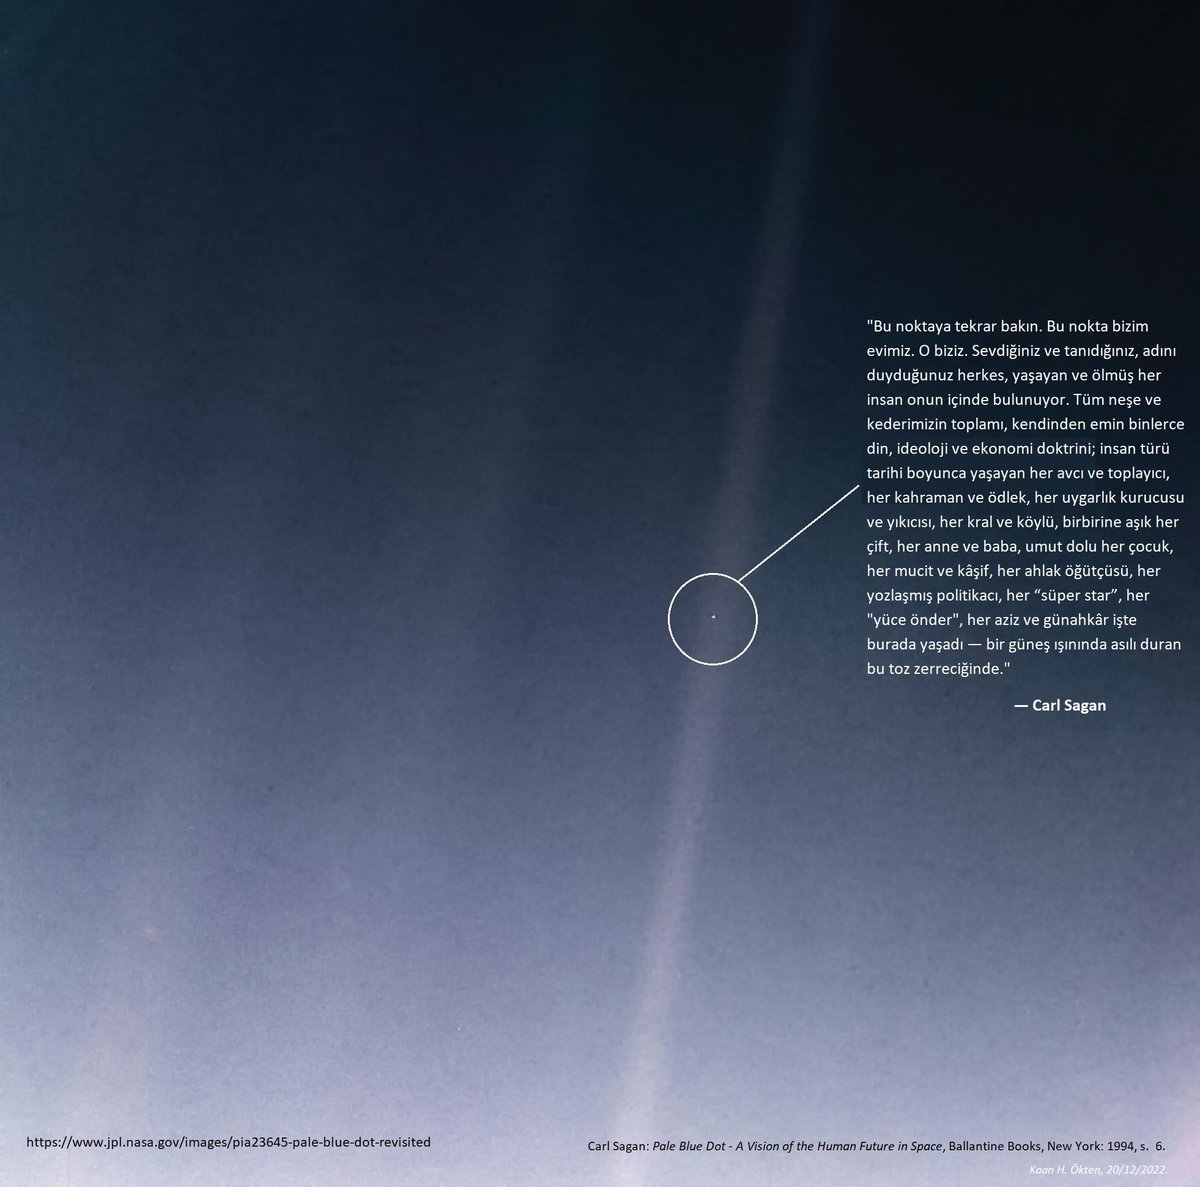 Carl Sagan'ın ölüm yıl dönümü bugün. 1990'da Voyager 1 uzay aracı, 6 milyar kilometre uzaktan Dünya'nın fotoğrafını çekmişti. Bunun üzerine Carl Sagan, bu 'Soluk Mavi Nokta' hakkında şu destansı sözleri kaleme almıştı: